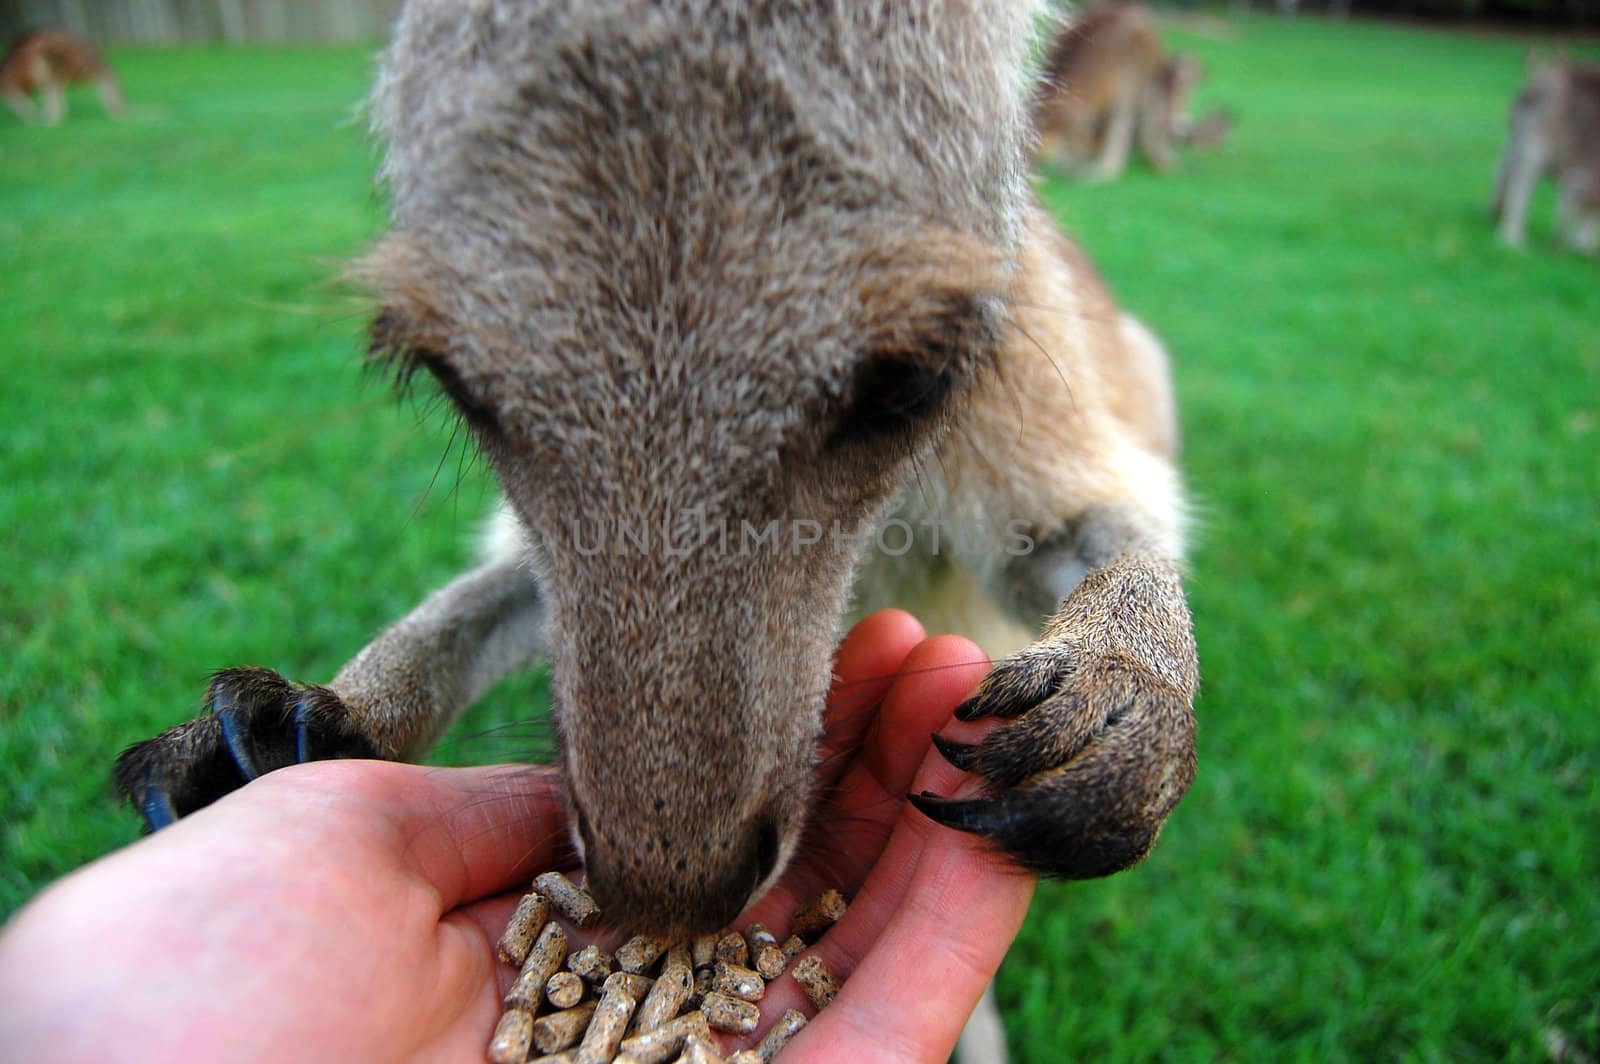 Feeding kangaroo